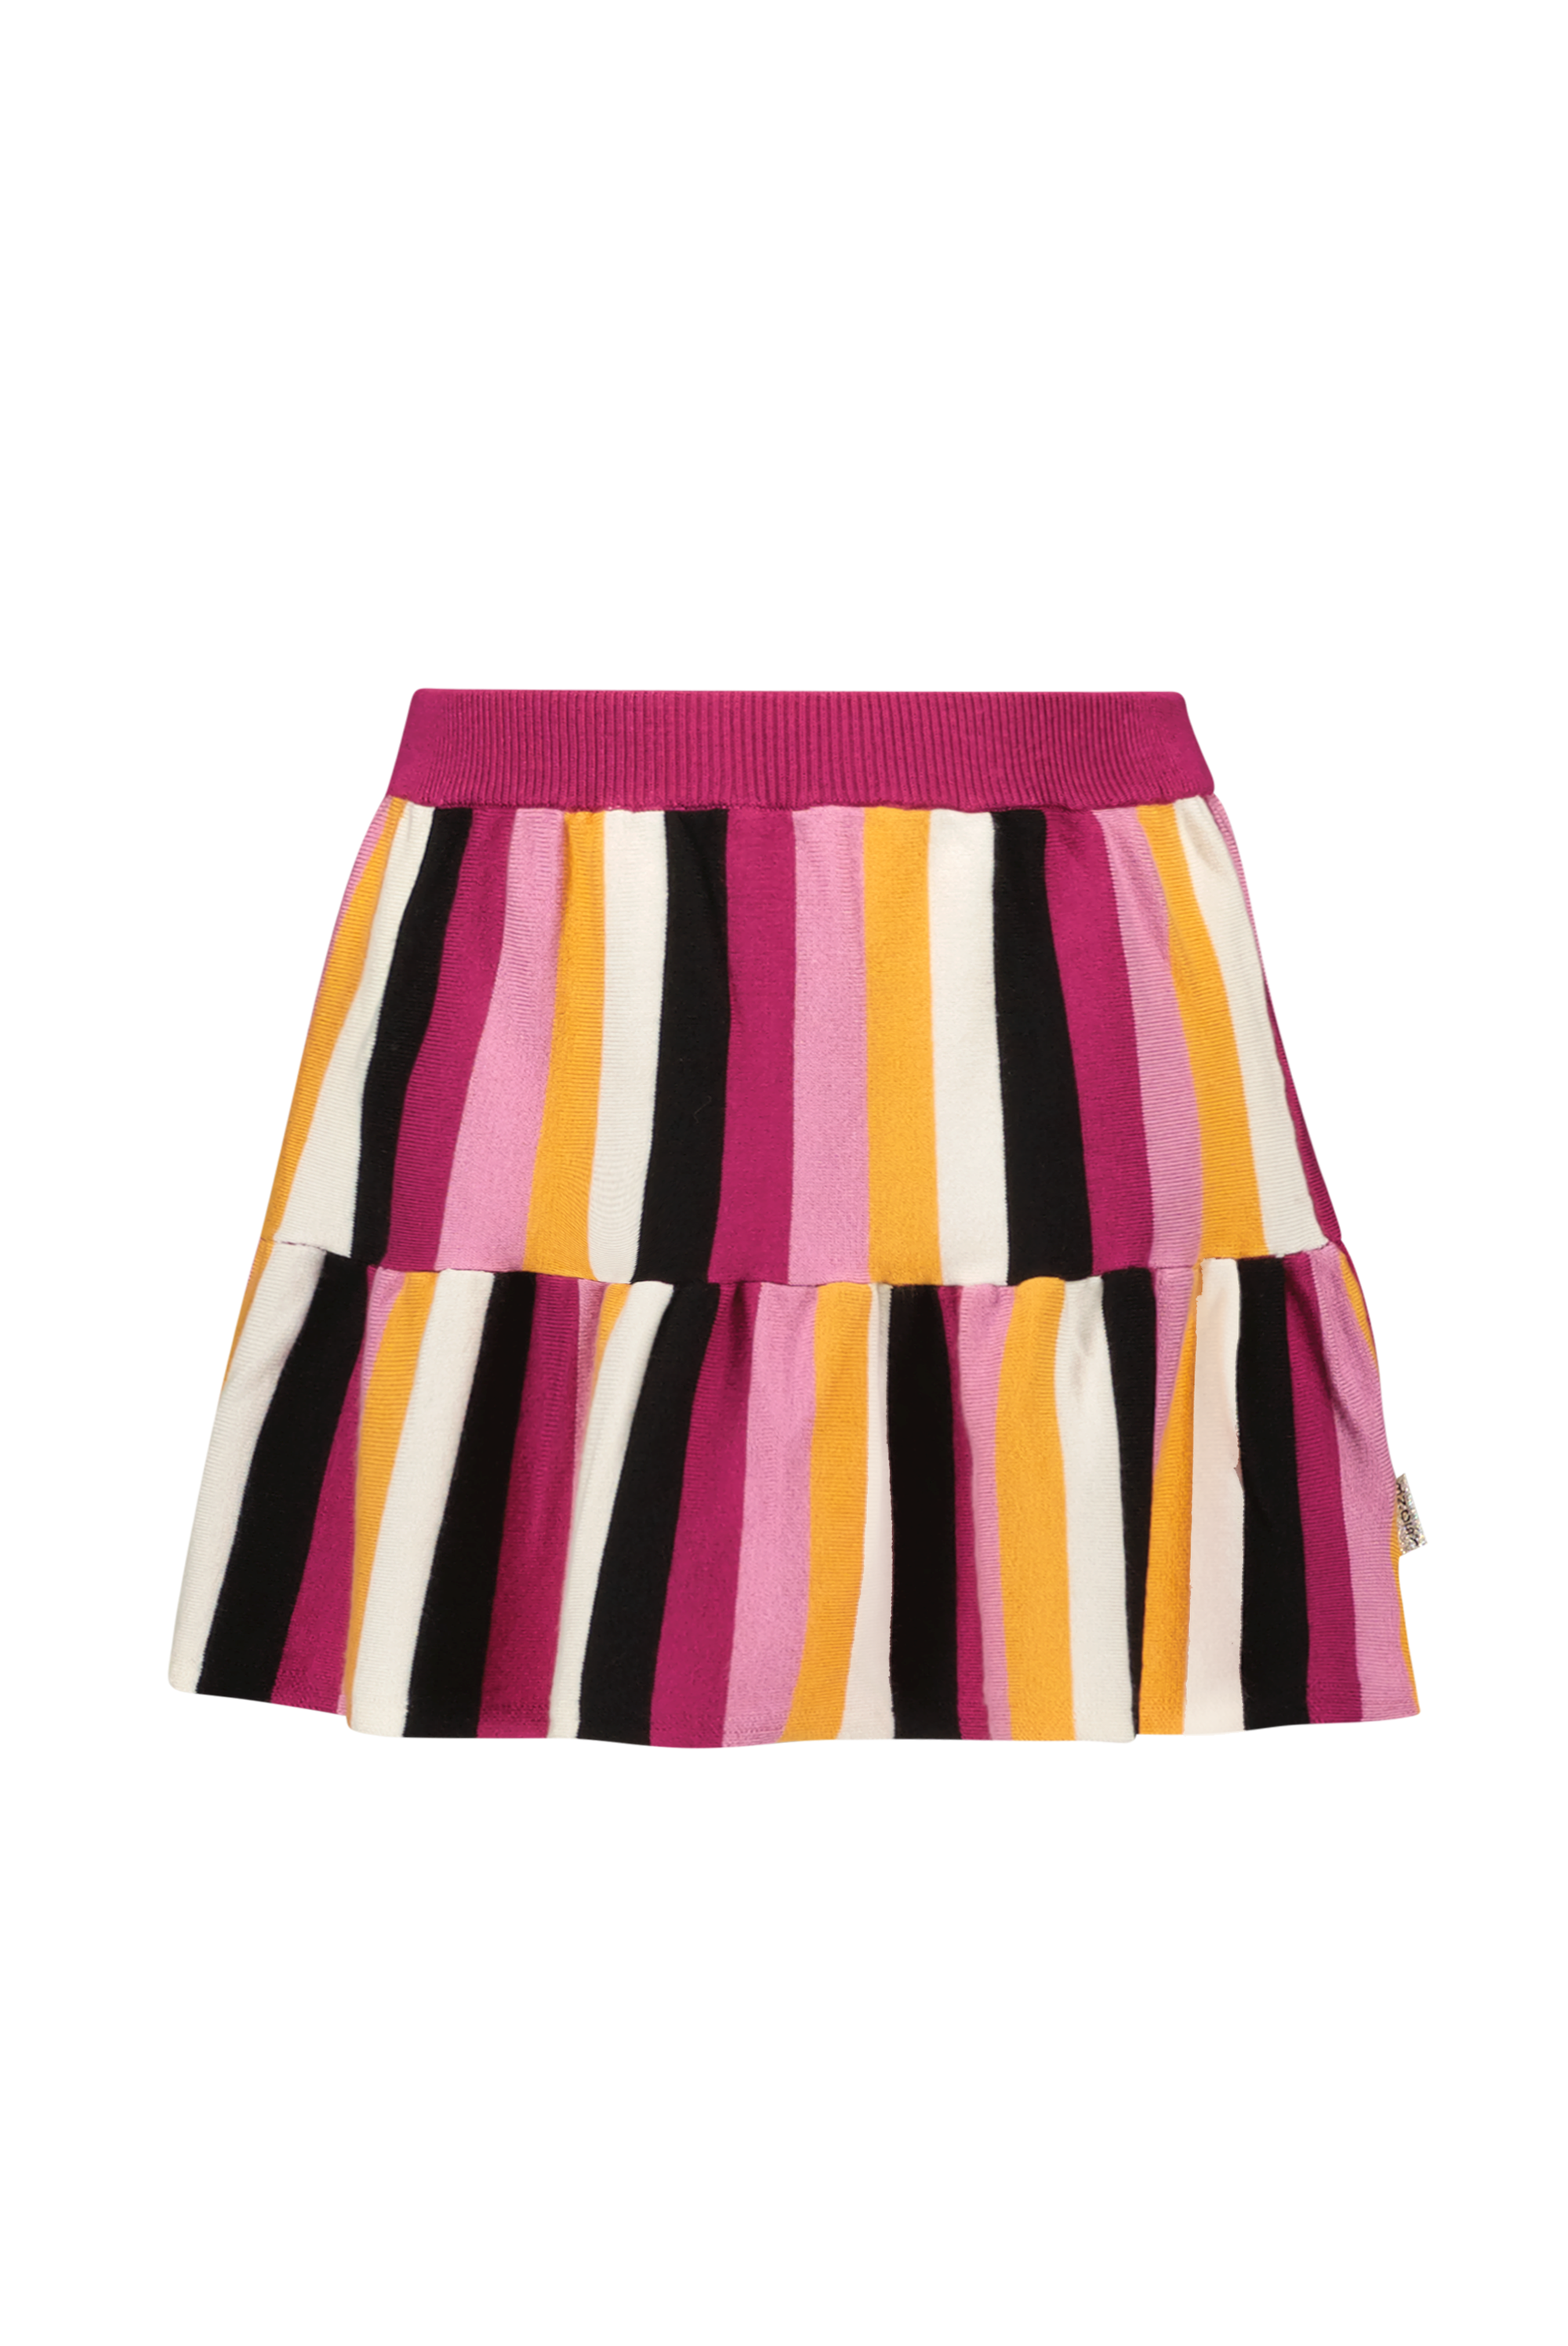 Rok Girls knitted striper skirt w/ c&s